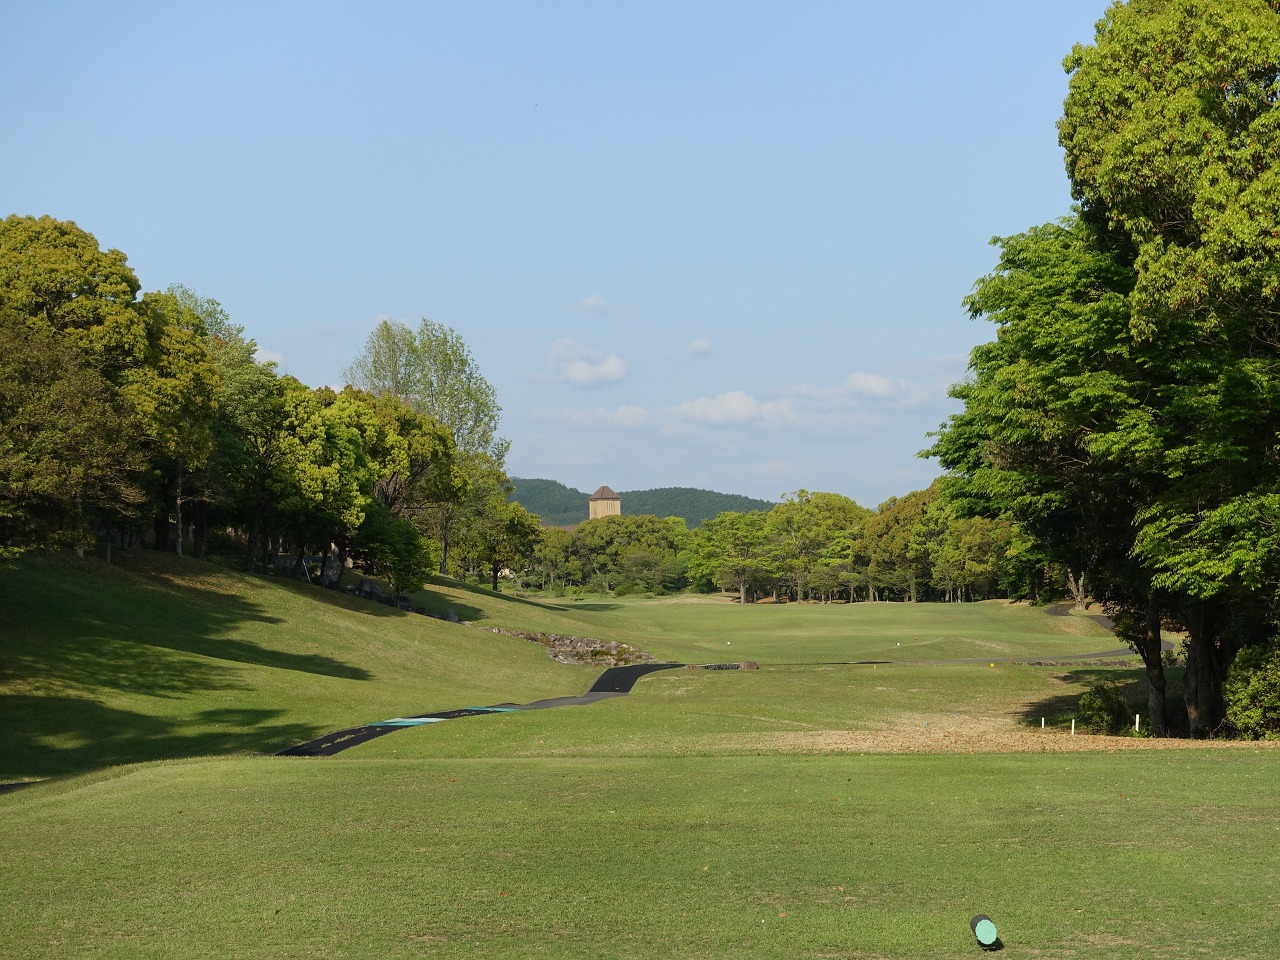 일본 골프 여행 최적지, 후쿠오카 센추리 골프클럽